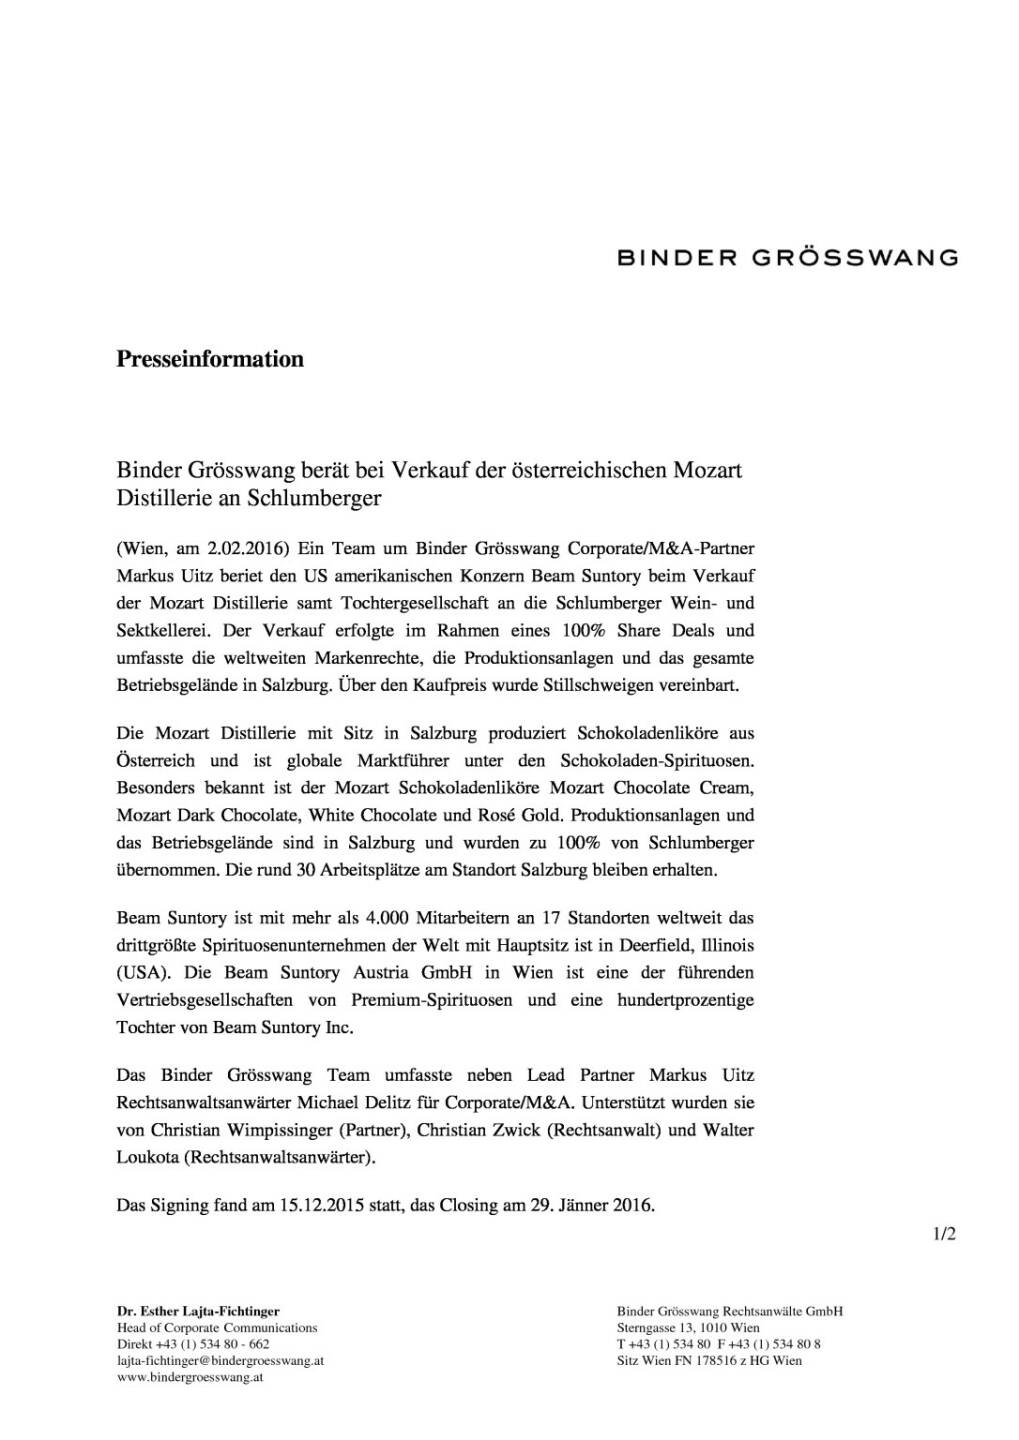 Binder Grösswang berät bei Verkauf der österreichischen Mozart Distillerie an Schlumberger, Seite 1/2, komplettes Dokument unter http://boerse-social.com/static/uploads/file_594_binder_grosswang_berat_bei_verkauf_der_osterreichischen_mozart_distillerie_an_schlumberger.pdf